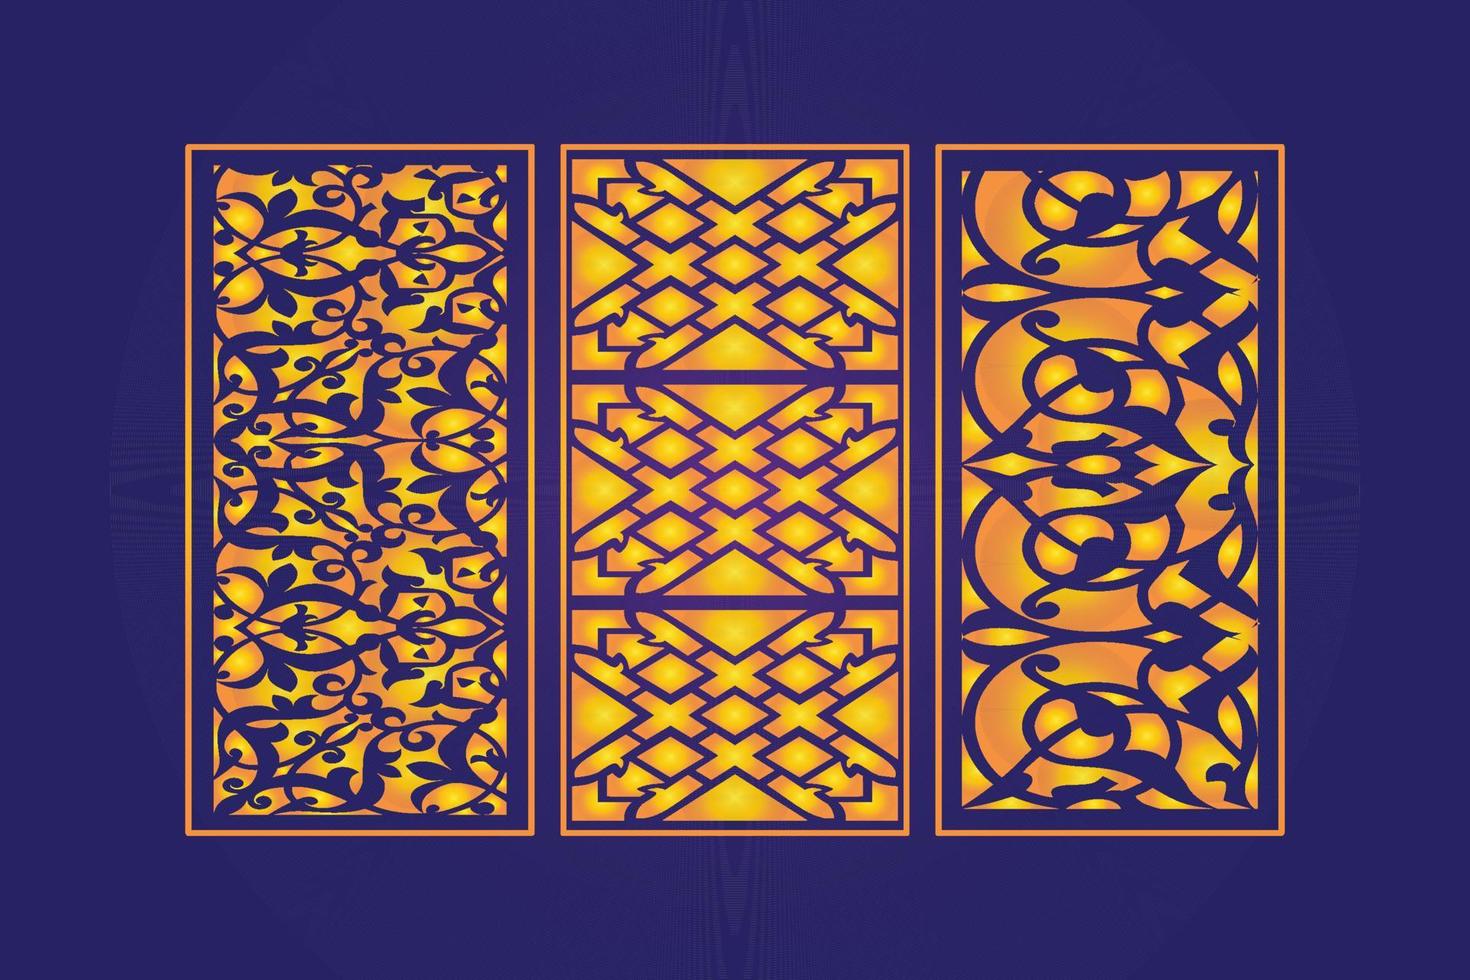 décoratif découpé à l'emporte-pièce floral islamique abstrait motif découpé au laser panneaux modèle or vecteur